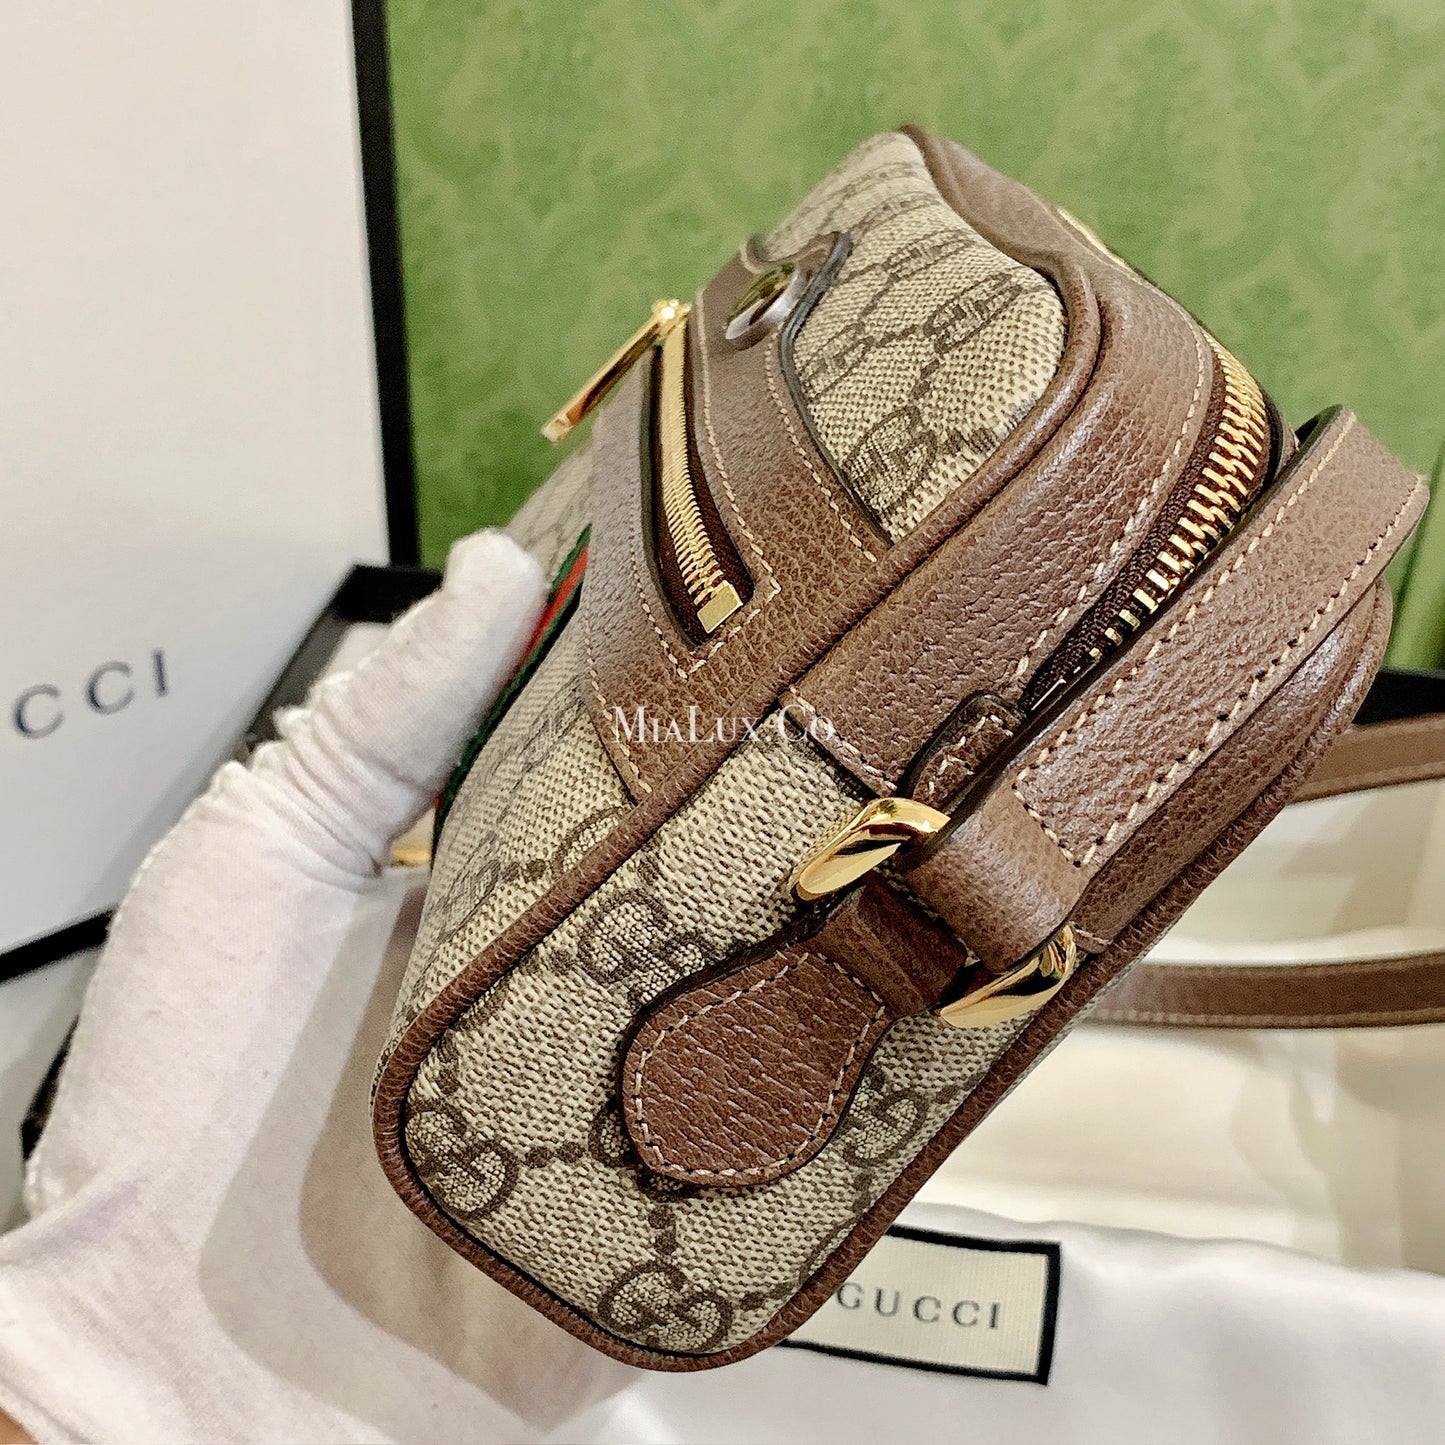 Gucci Ophidia GG Supreme Canvas Mini Bag - 517350 *£795